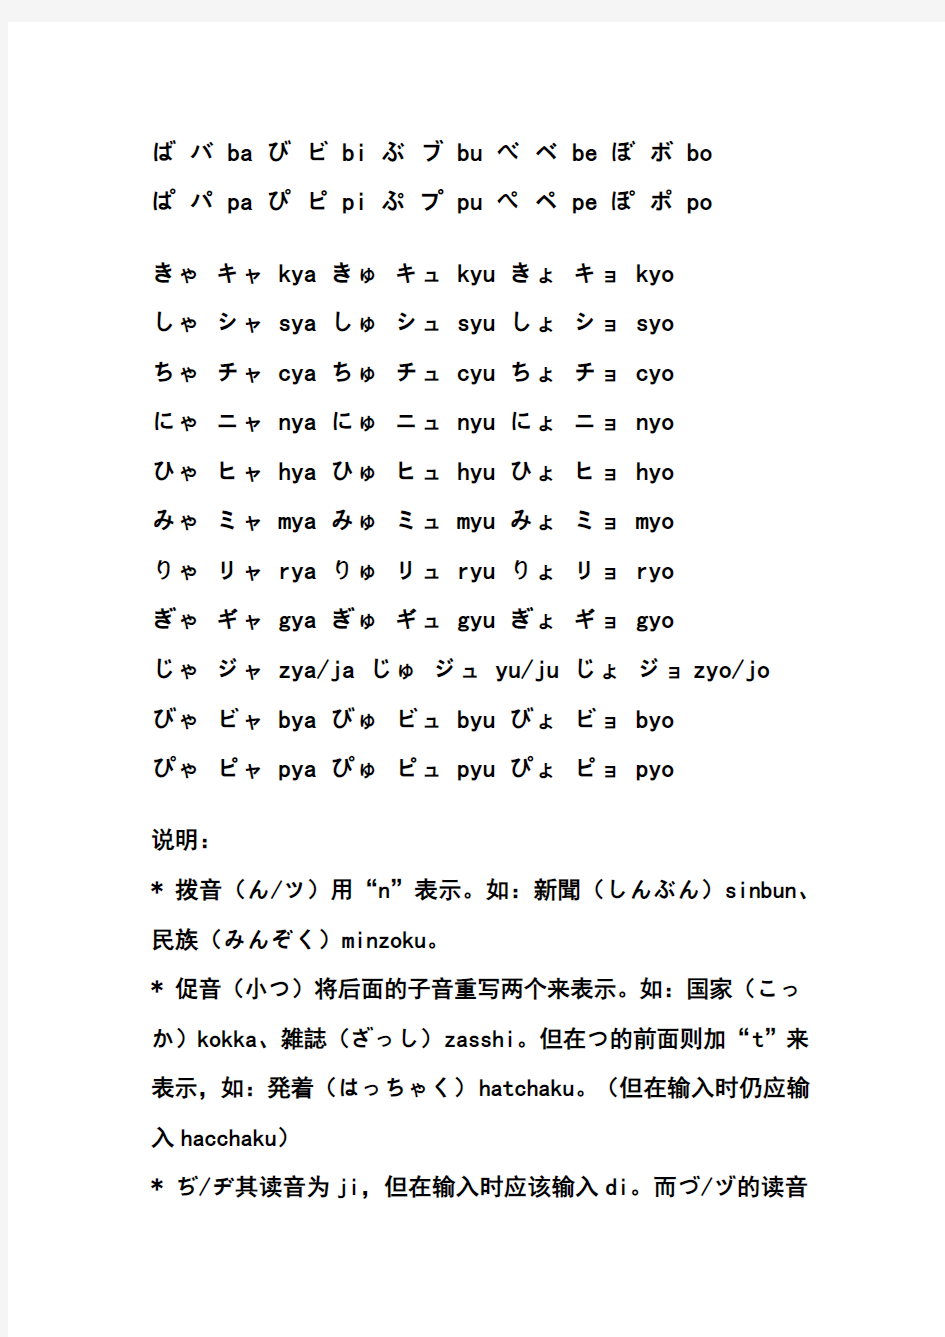 日语平假名与发音一览